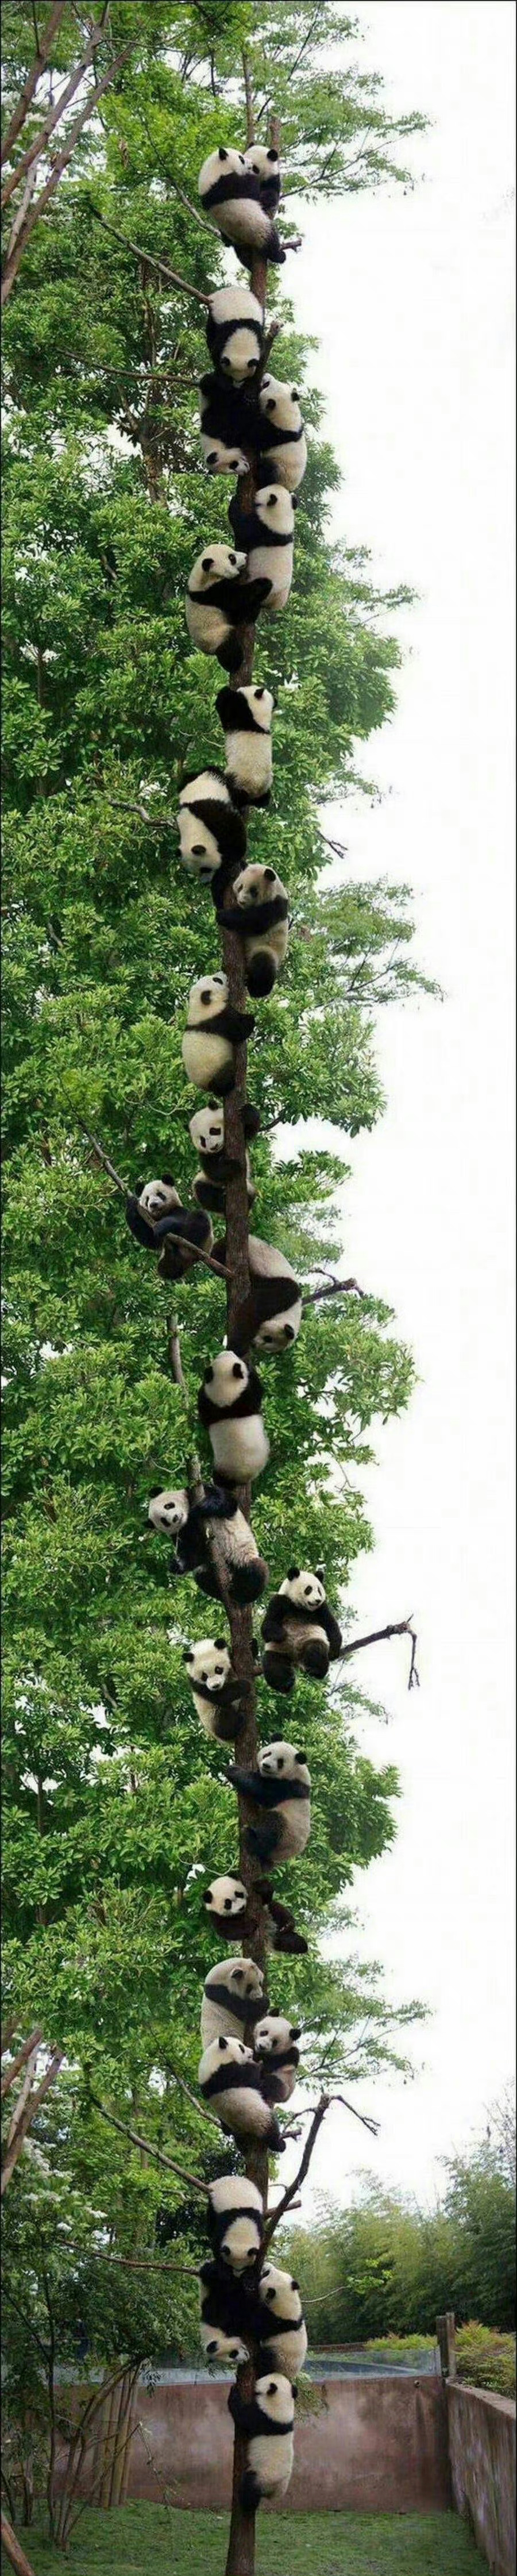 遇见熊猫上树，你会好事不断 心想事成。 ​ ​​​